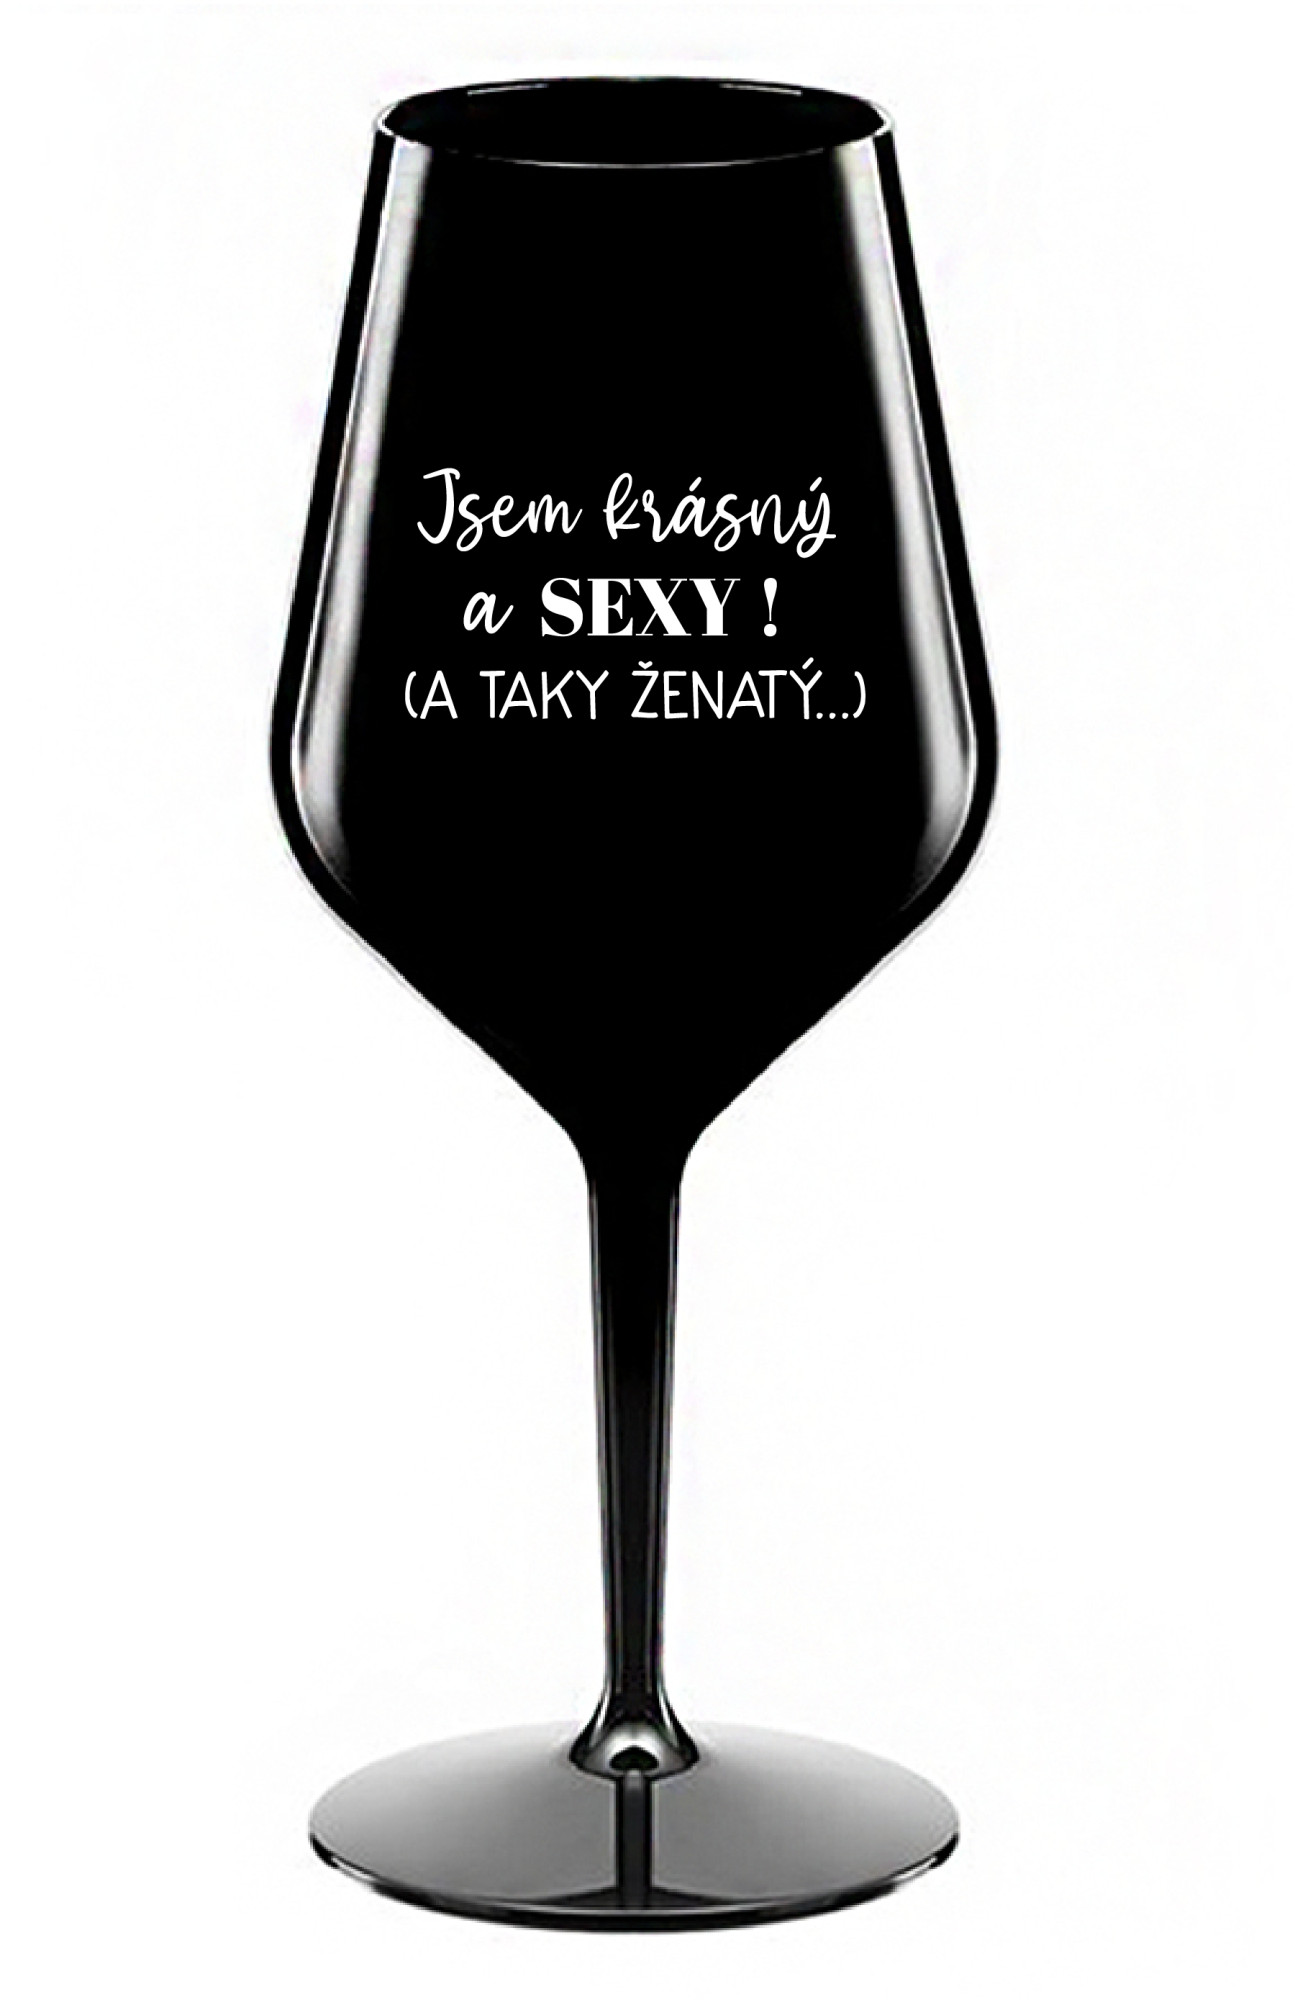 JSEM KRÁSNÝ A SEXY! (A TAKY ŽENATÝ...) - černá nerozbitná sklenice na víno 470 ml